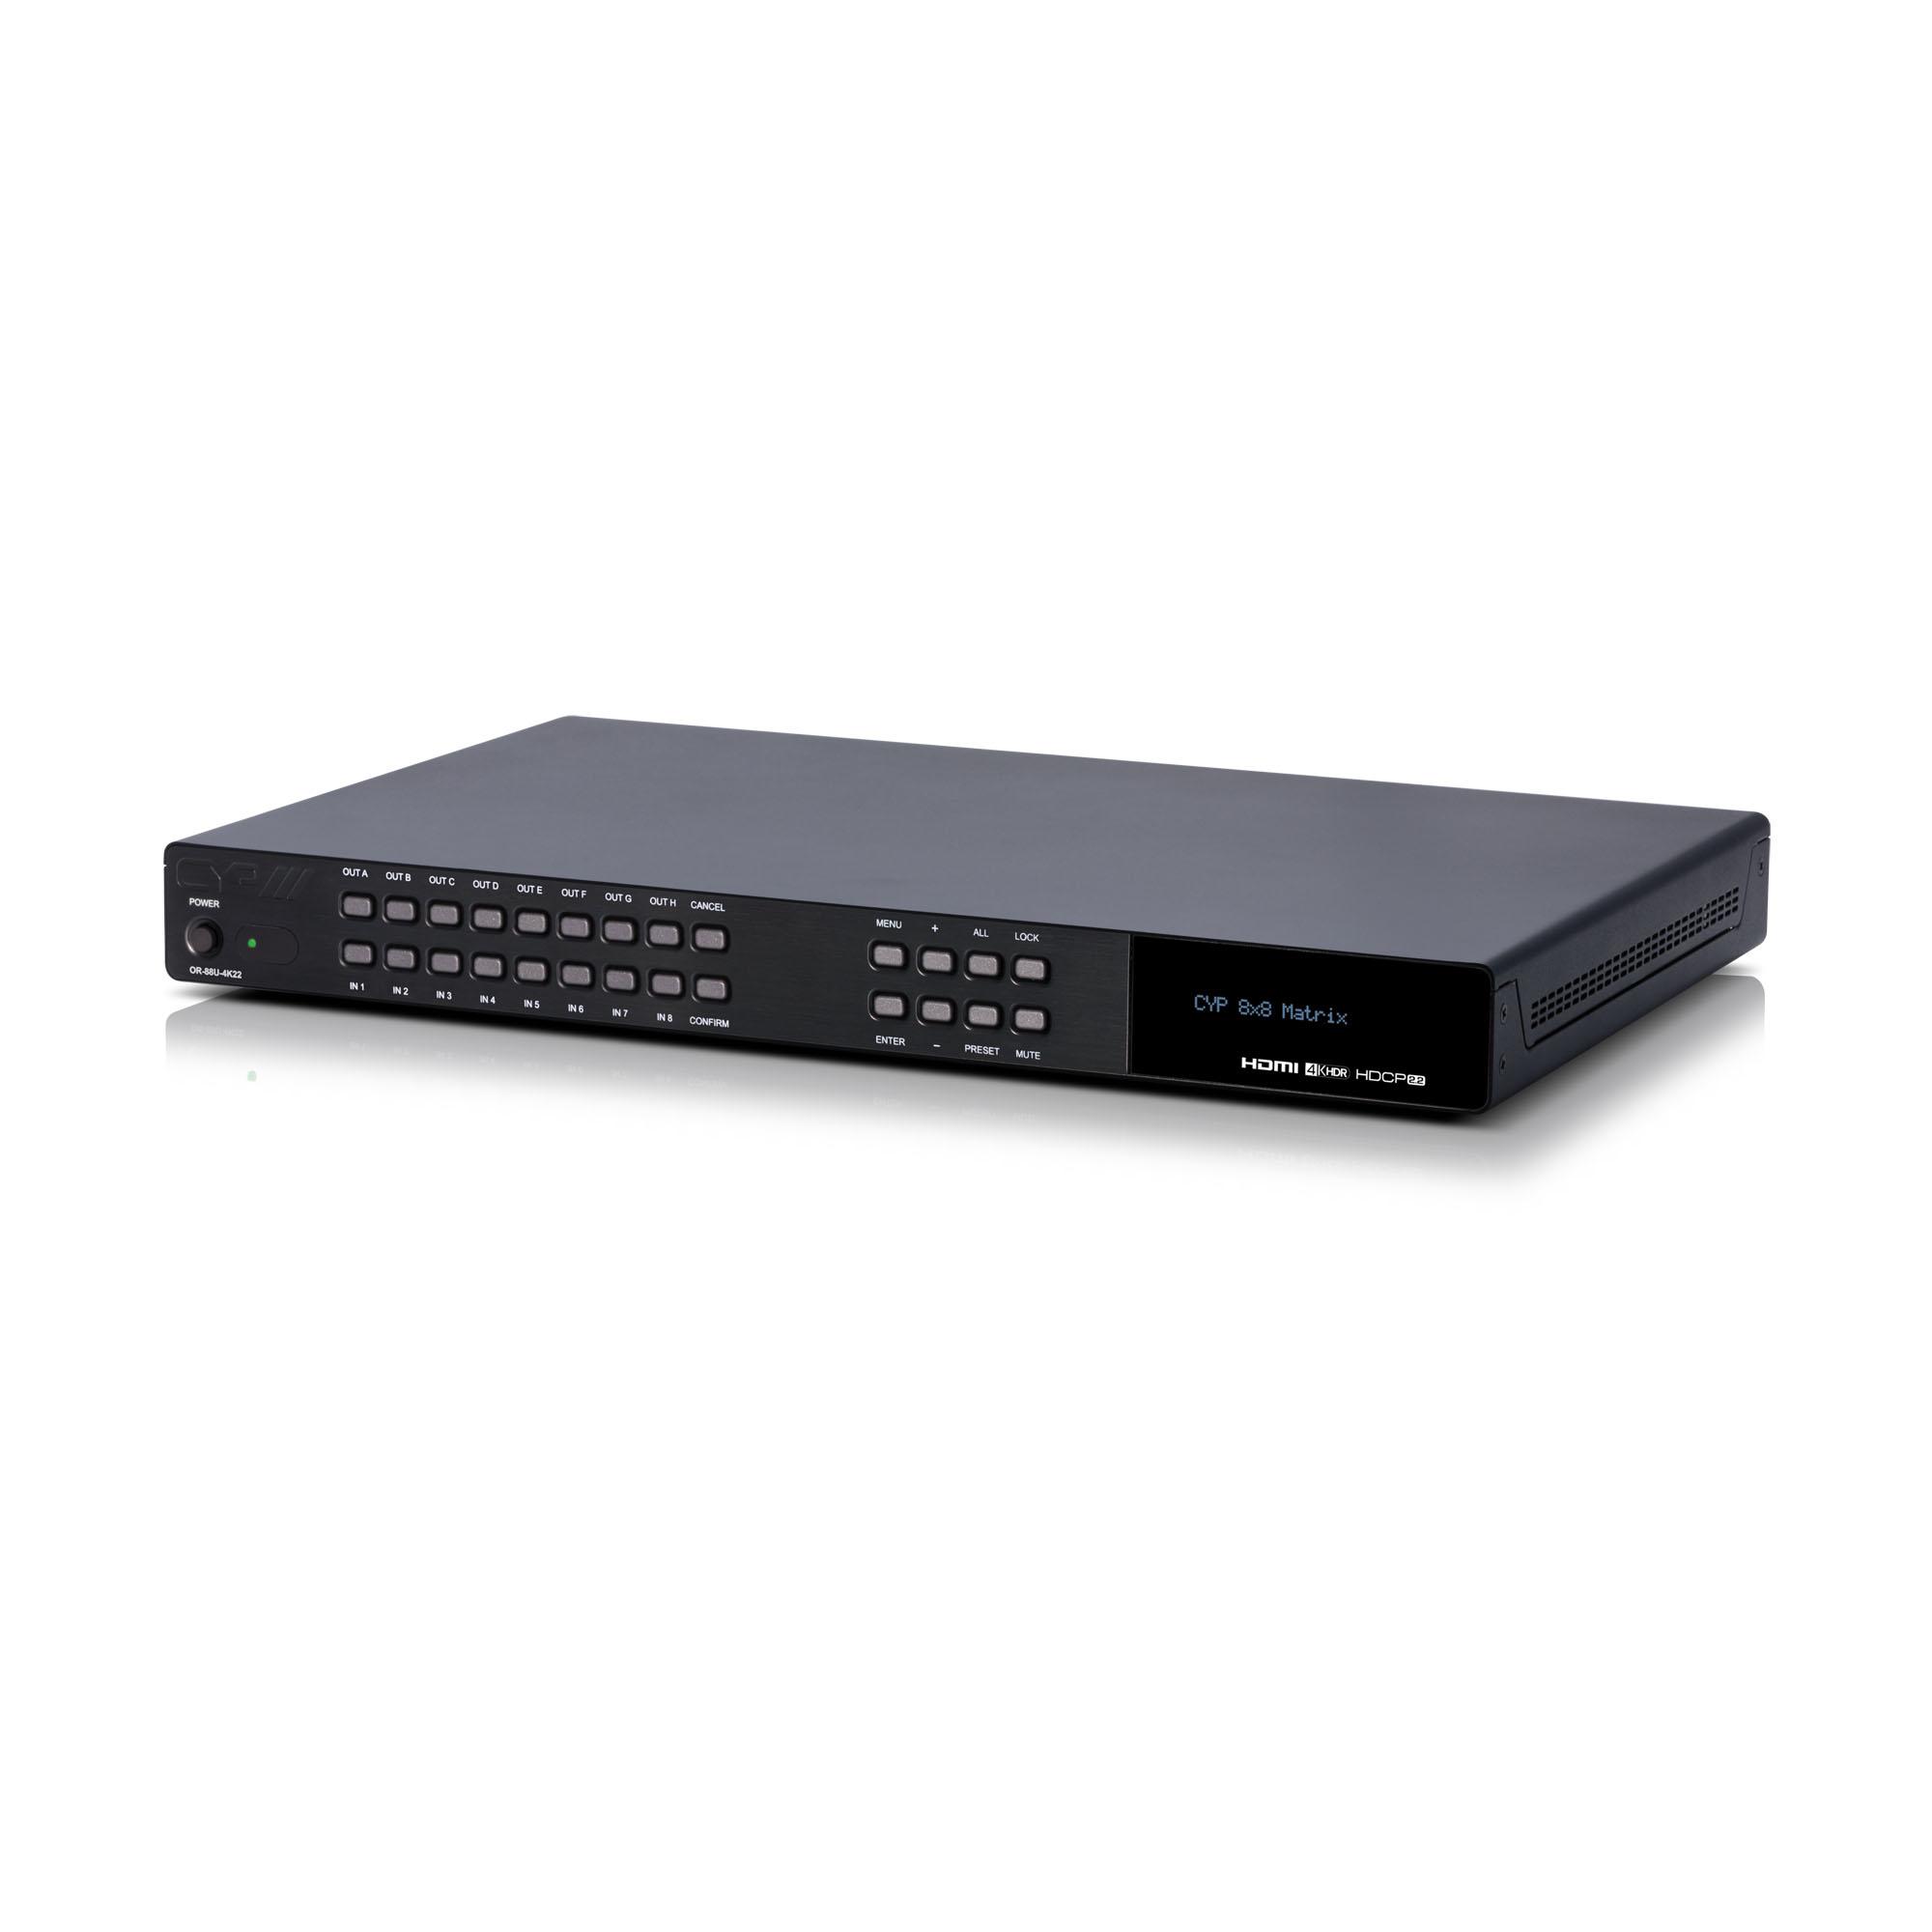 OR-88U-4K22 8 x 8 HDMI Matrix Switcher with USB Power (6G, 4K, HDCP2.2, HDMI2.0)